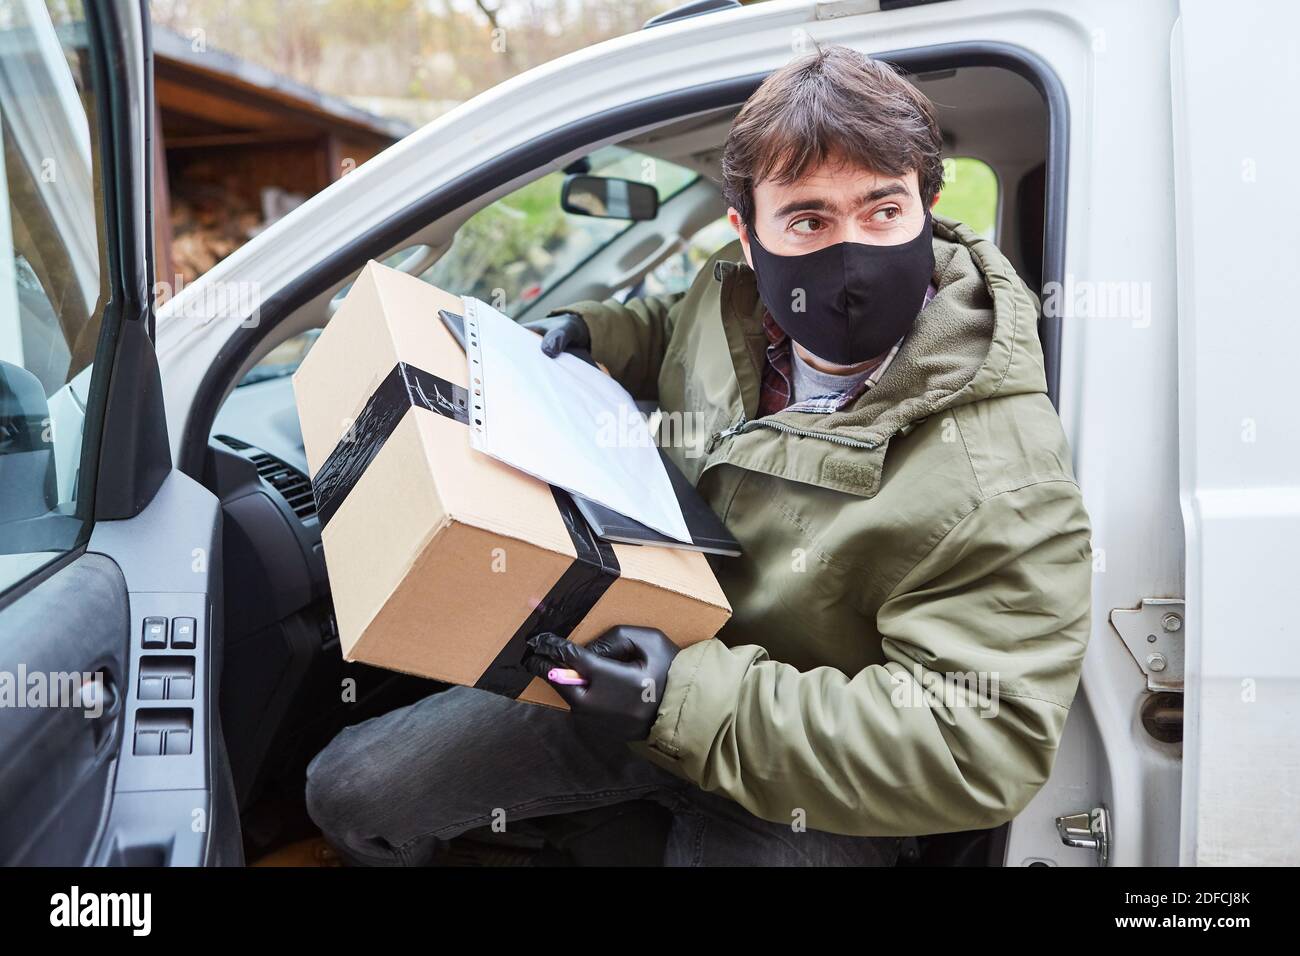 Lieferservice Paketzustellung Mann mit Gesichtsmaske verlässt seine Fahrzeug, um die Lieferung zu liefern Stockfoto